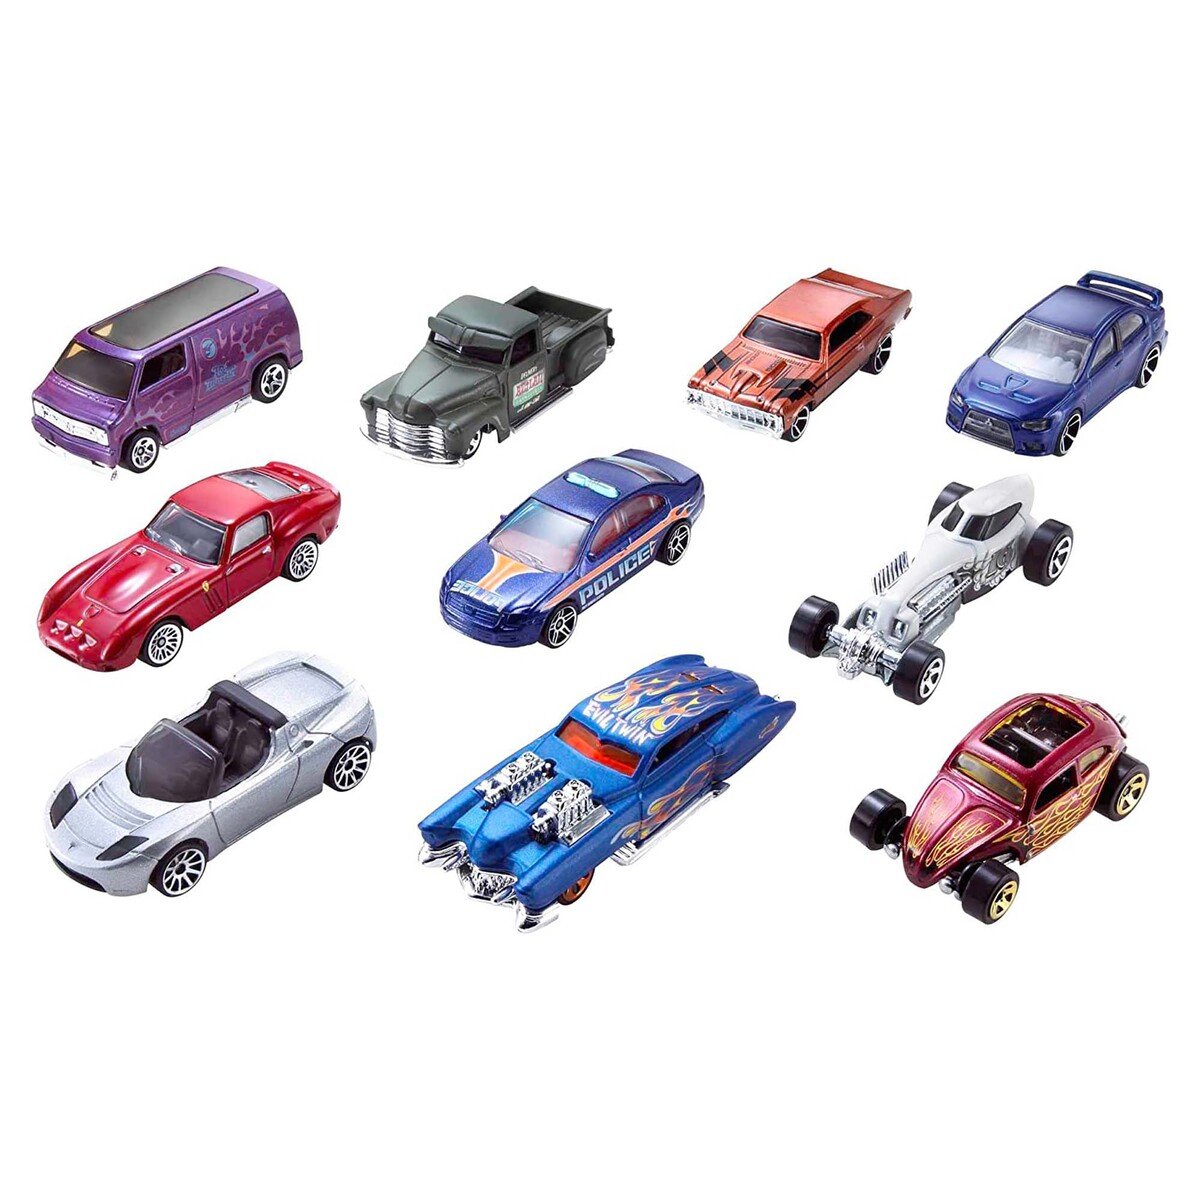 هوت ويل مجموعة سيارات دفع 5 حبات ( متنوعة الأشكال و الألوان)